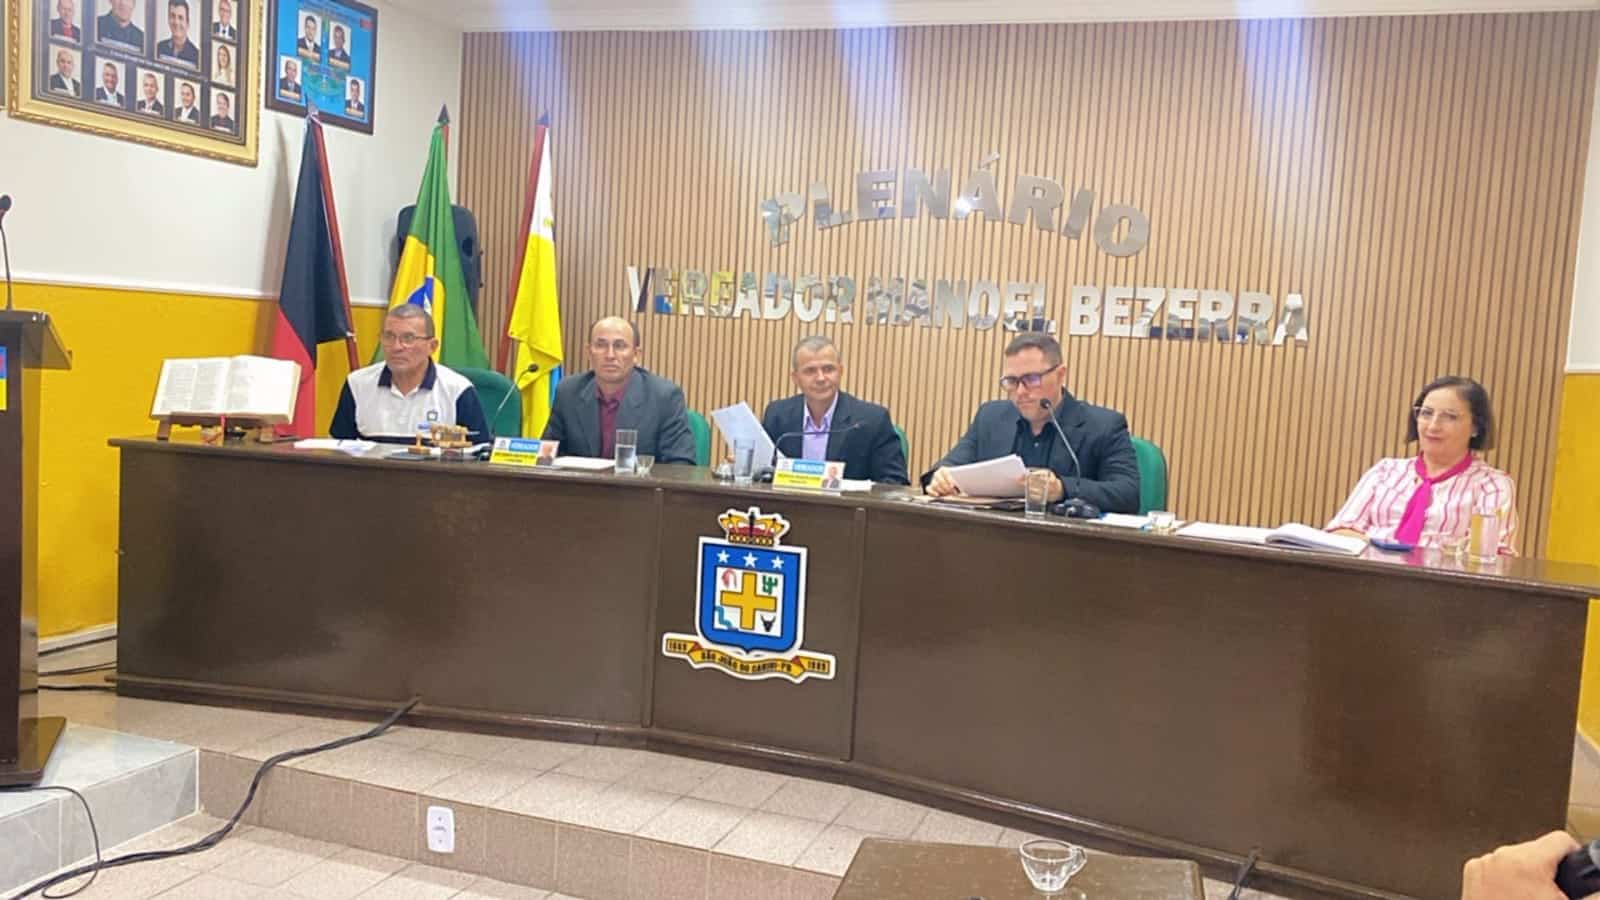 Câmara de São João do Cariri realiza mais uma sessão e vereadores aprovam proposituras de interesse da população do município